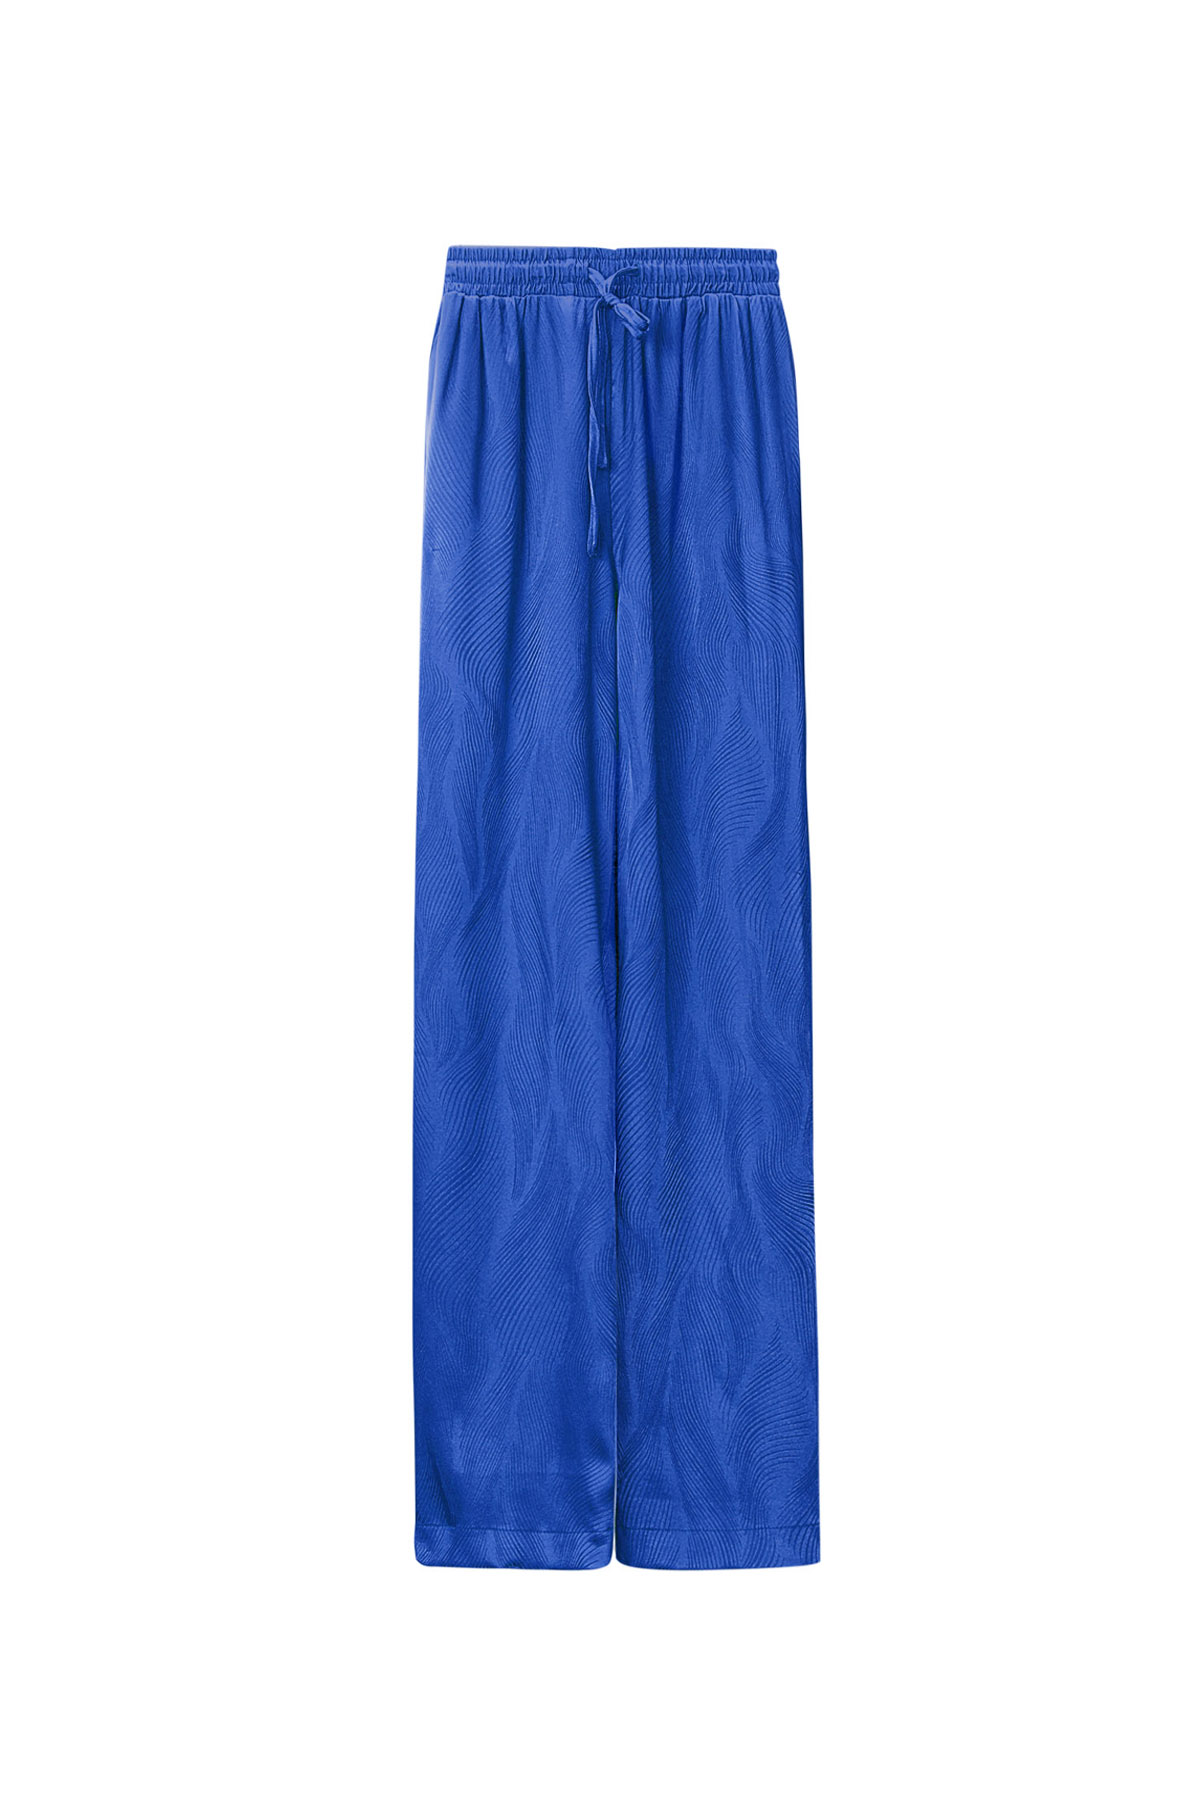 Satijnen broek met print - blauw